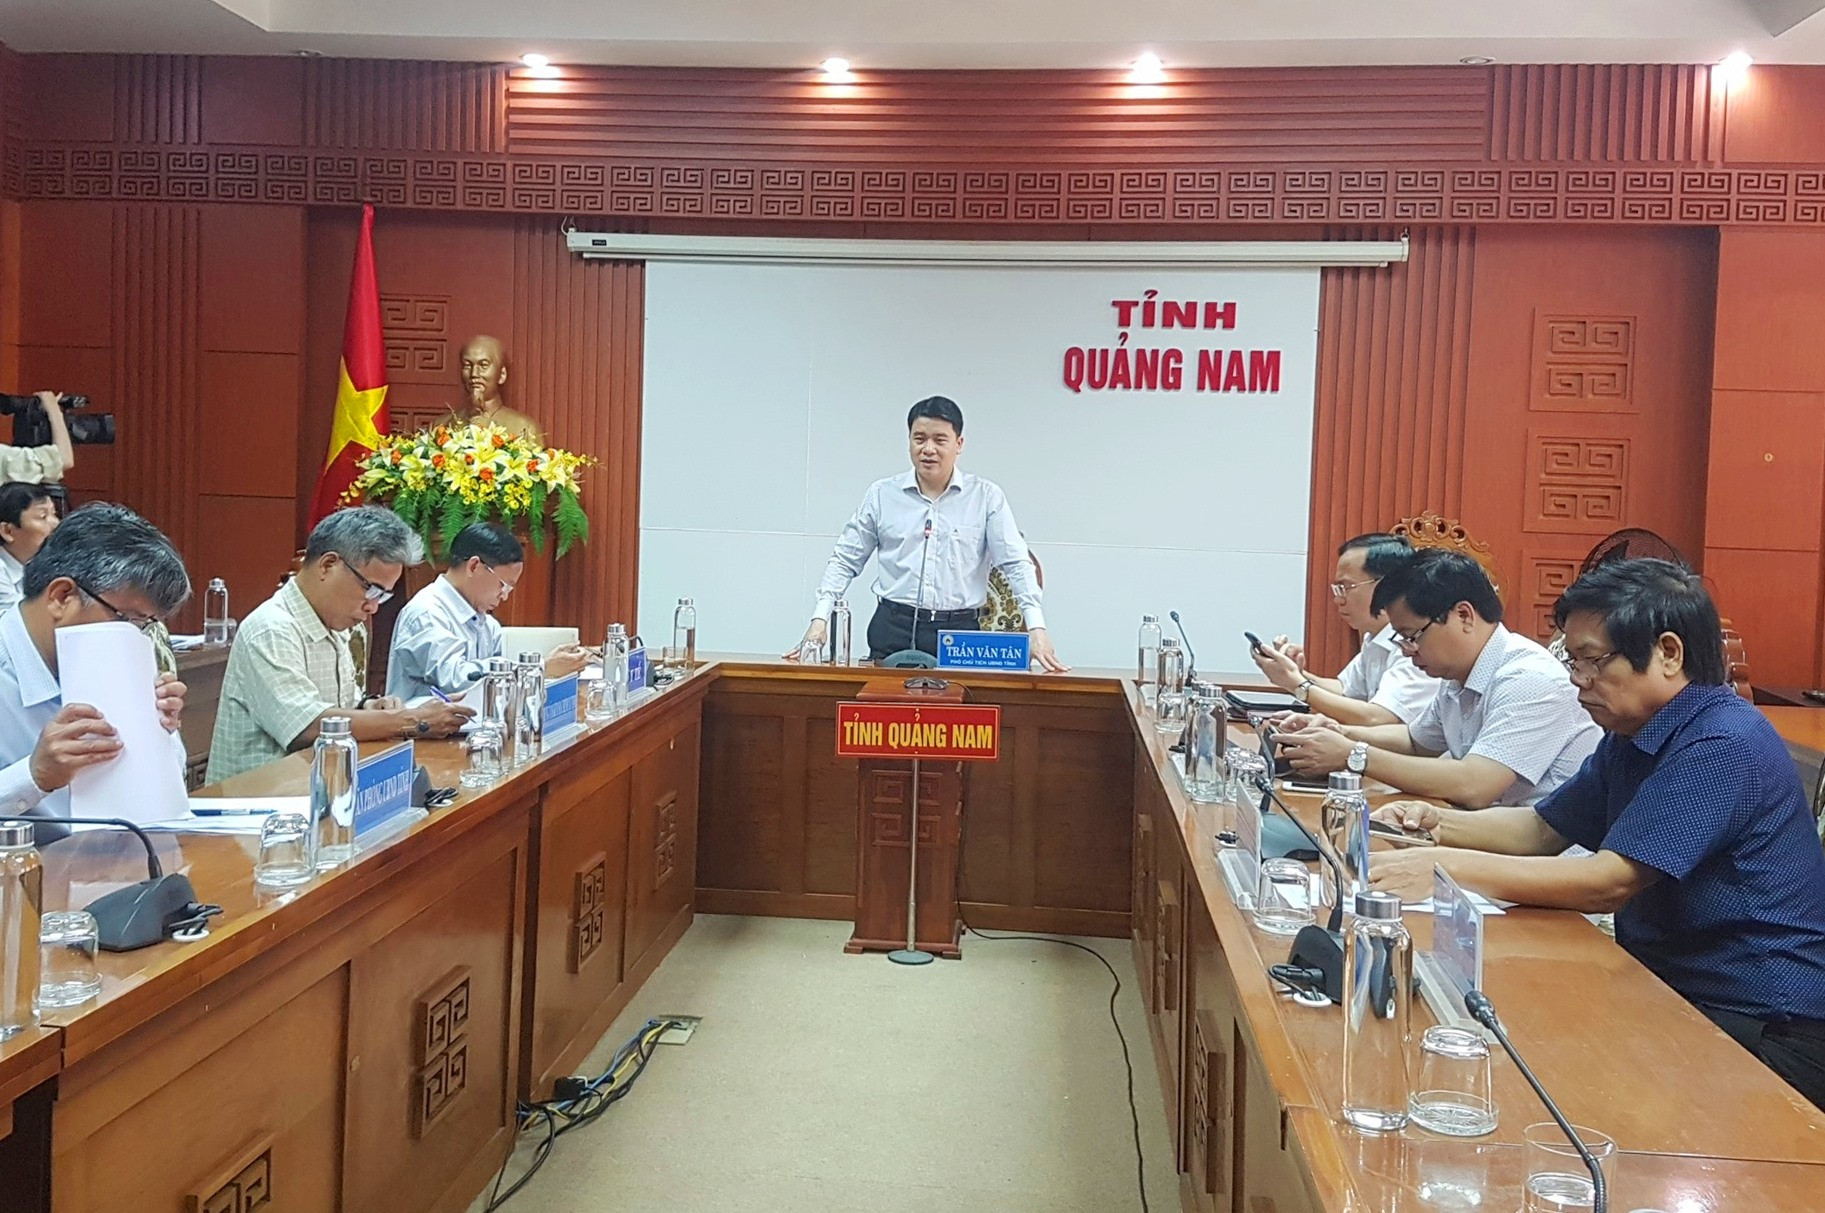 Phó Chủ tịch UBND tỉnh Trần Văn Tân yêu cầu thực hiện nghiêm các biện pháp giám sát phòng chống dịch bệnh Covid-19. Ảnh: D.L